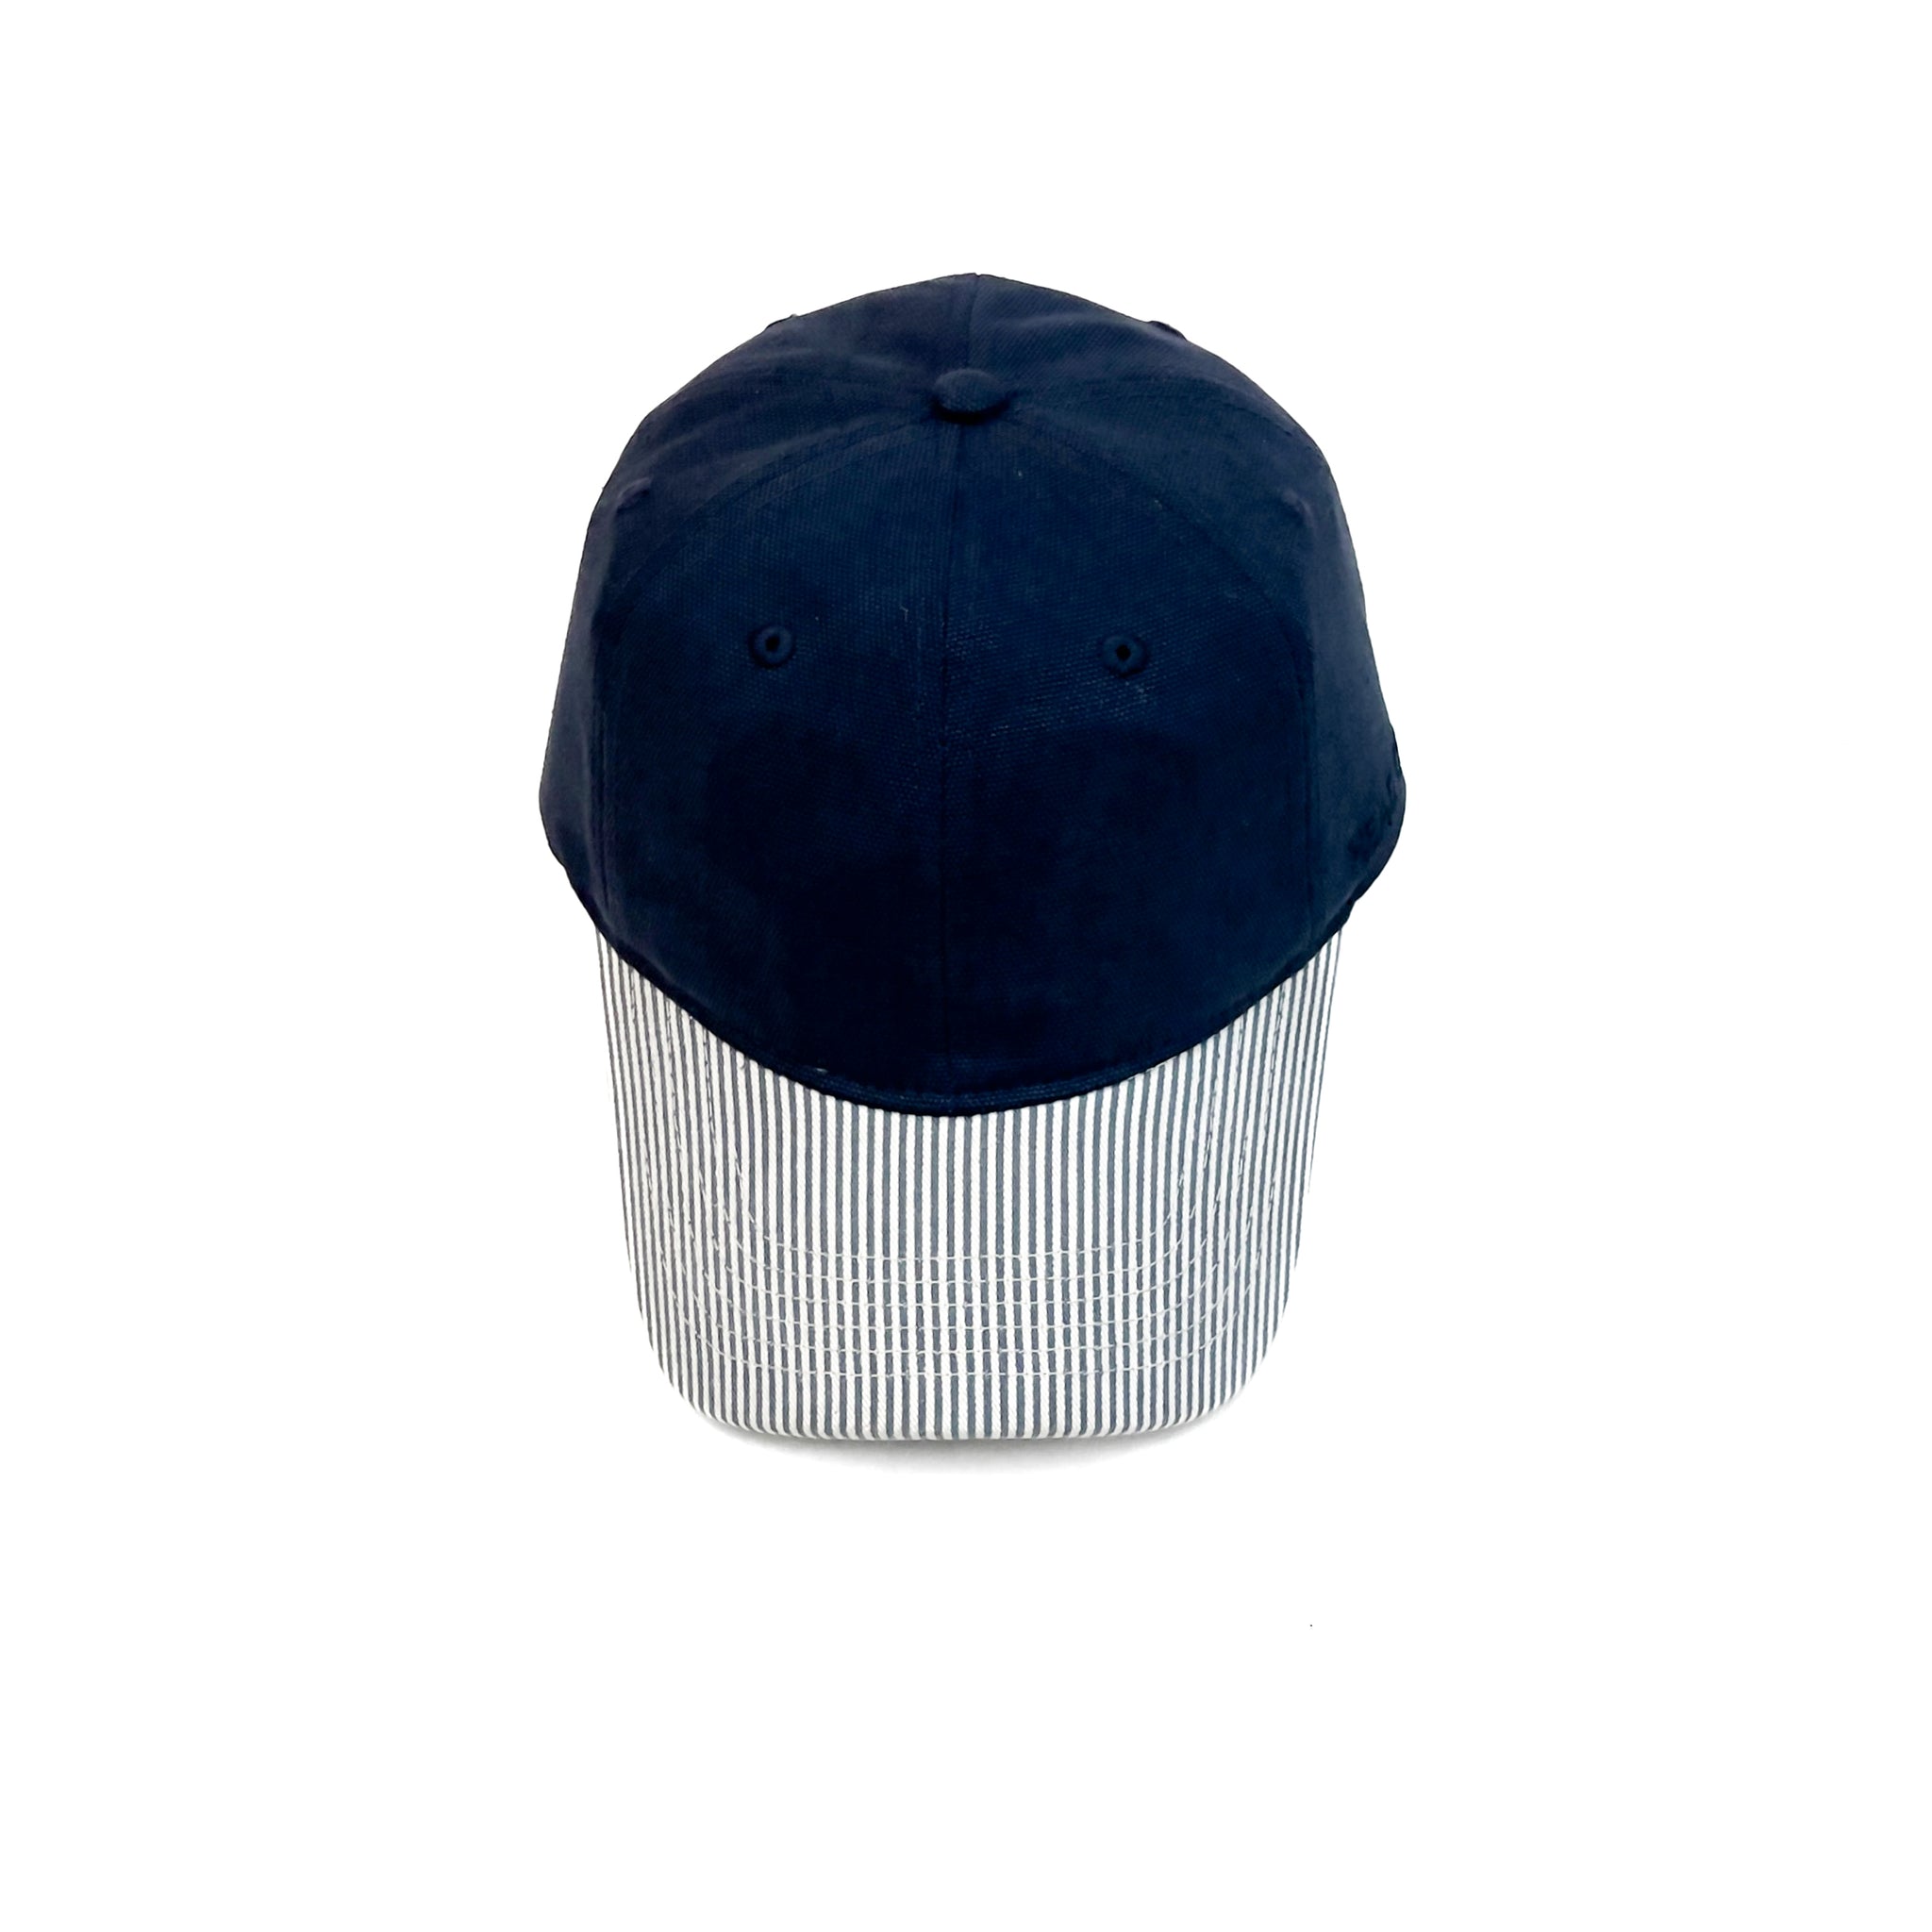 HEAD GEAR NAVY BLUE STRIPED CAP